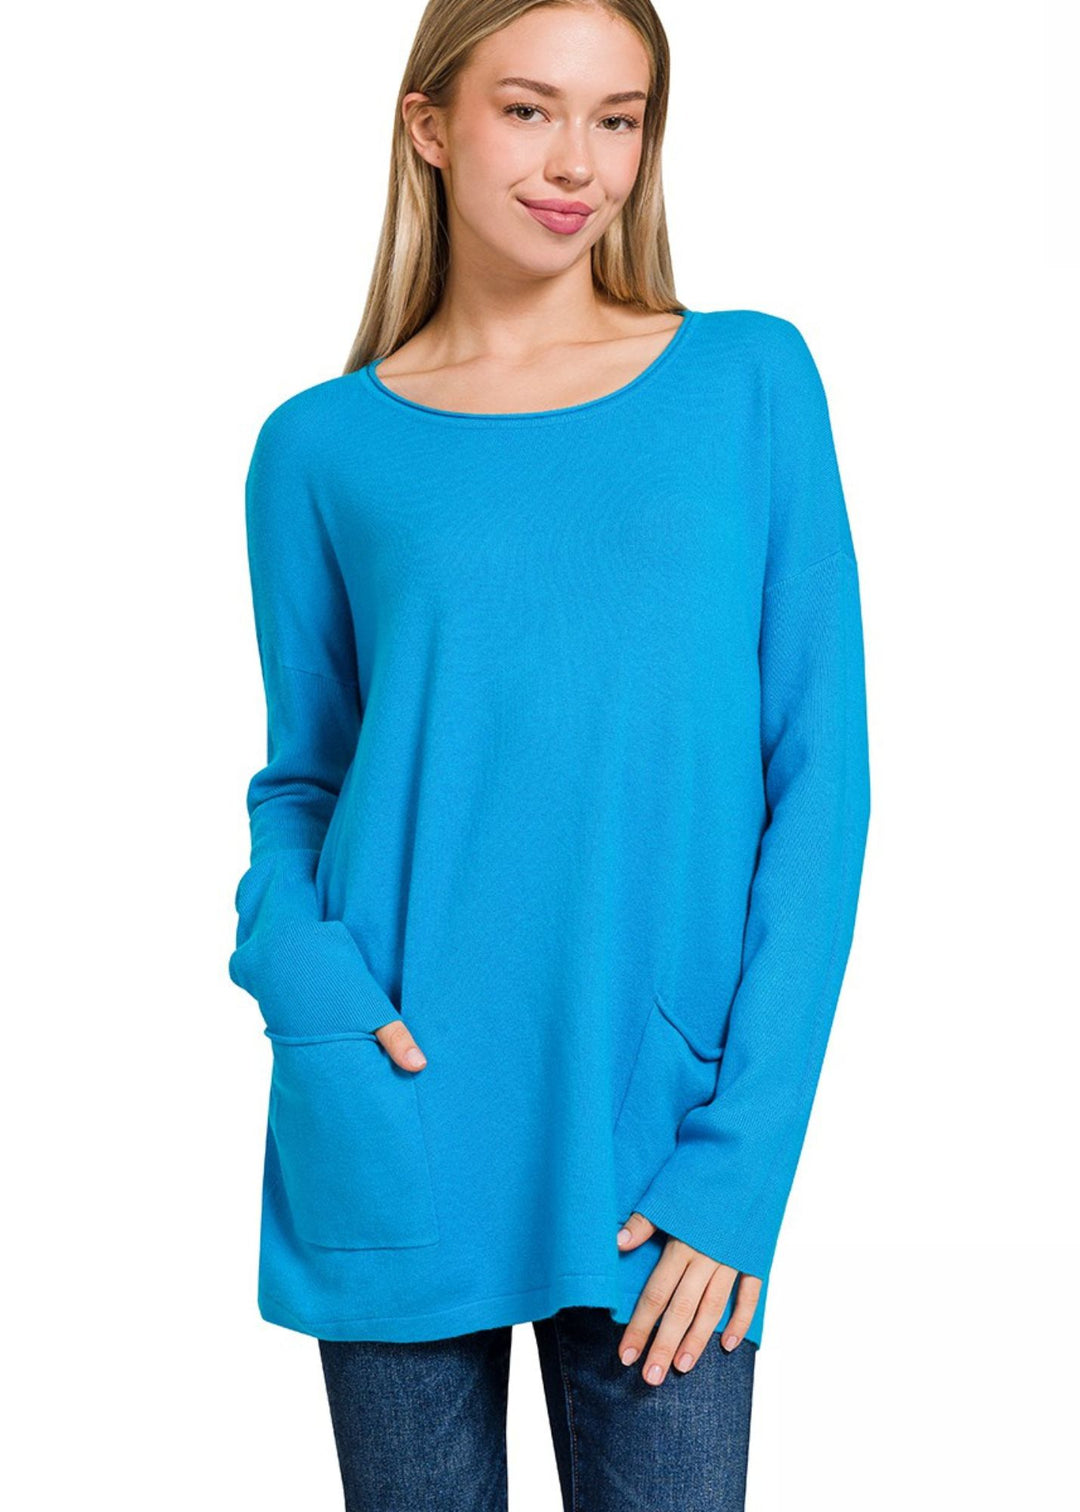 Zen Lightweight Pocket Sweater (Sky Blue)